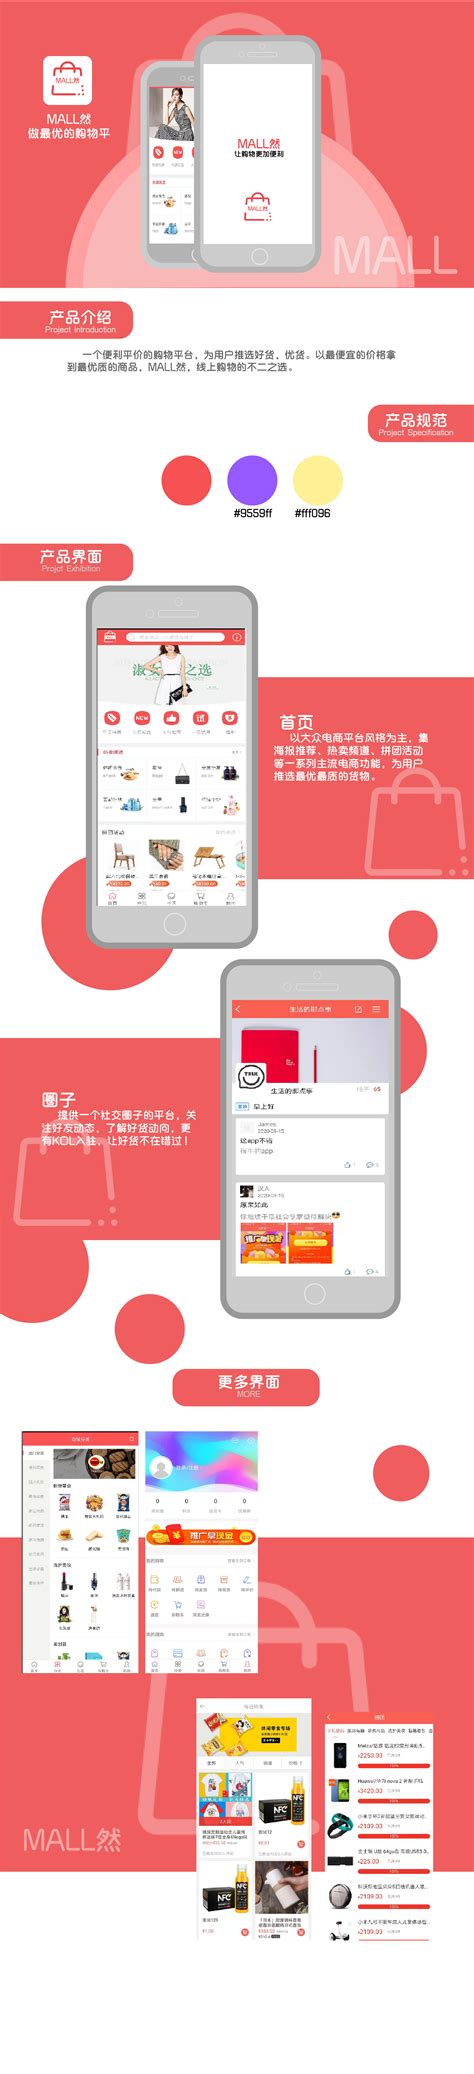 MALL购物商城_电商开发_管理系统开发_中杰科技-广州中杰信息科技官网